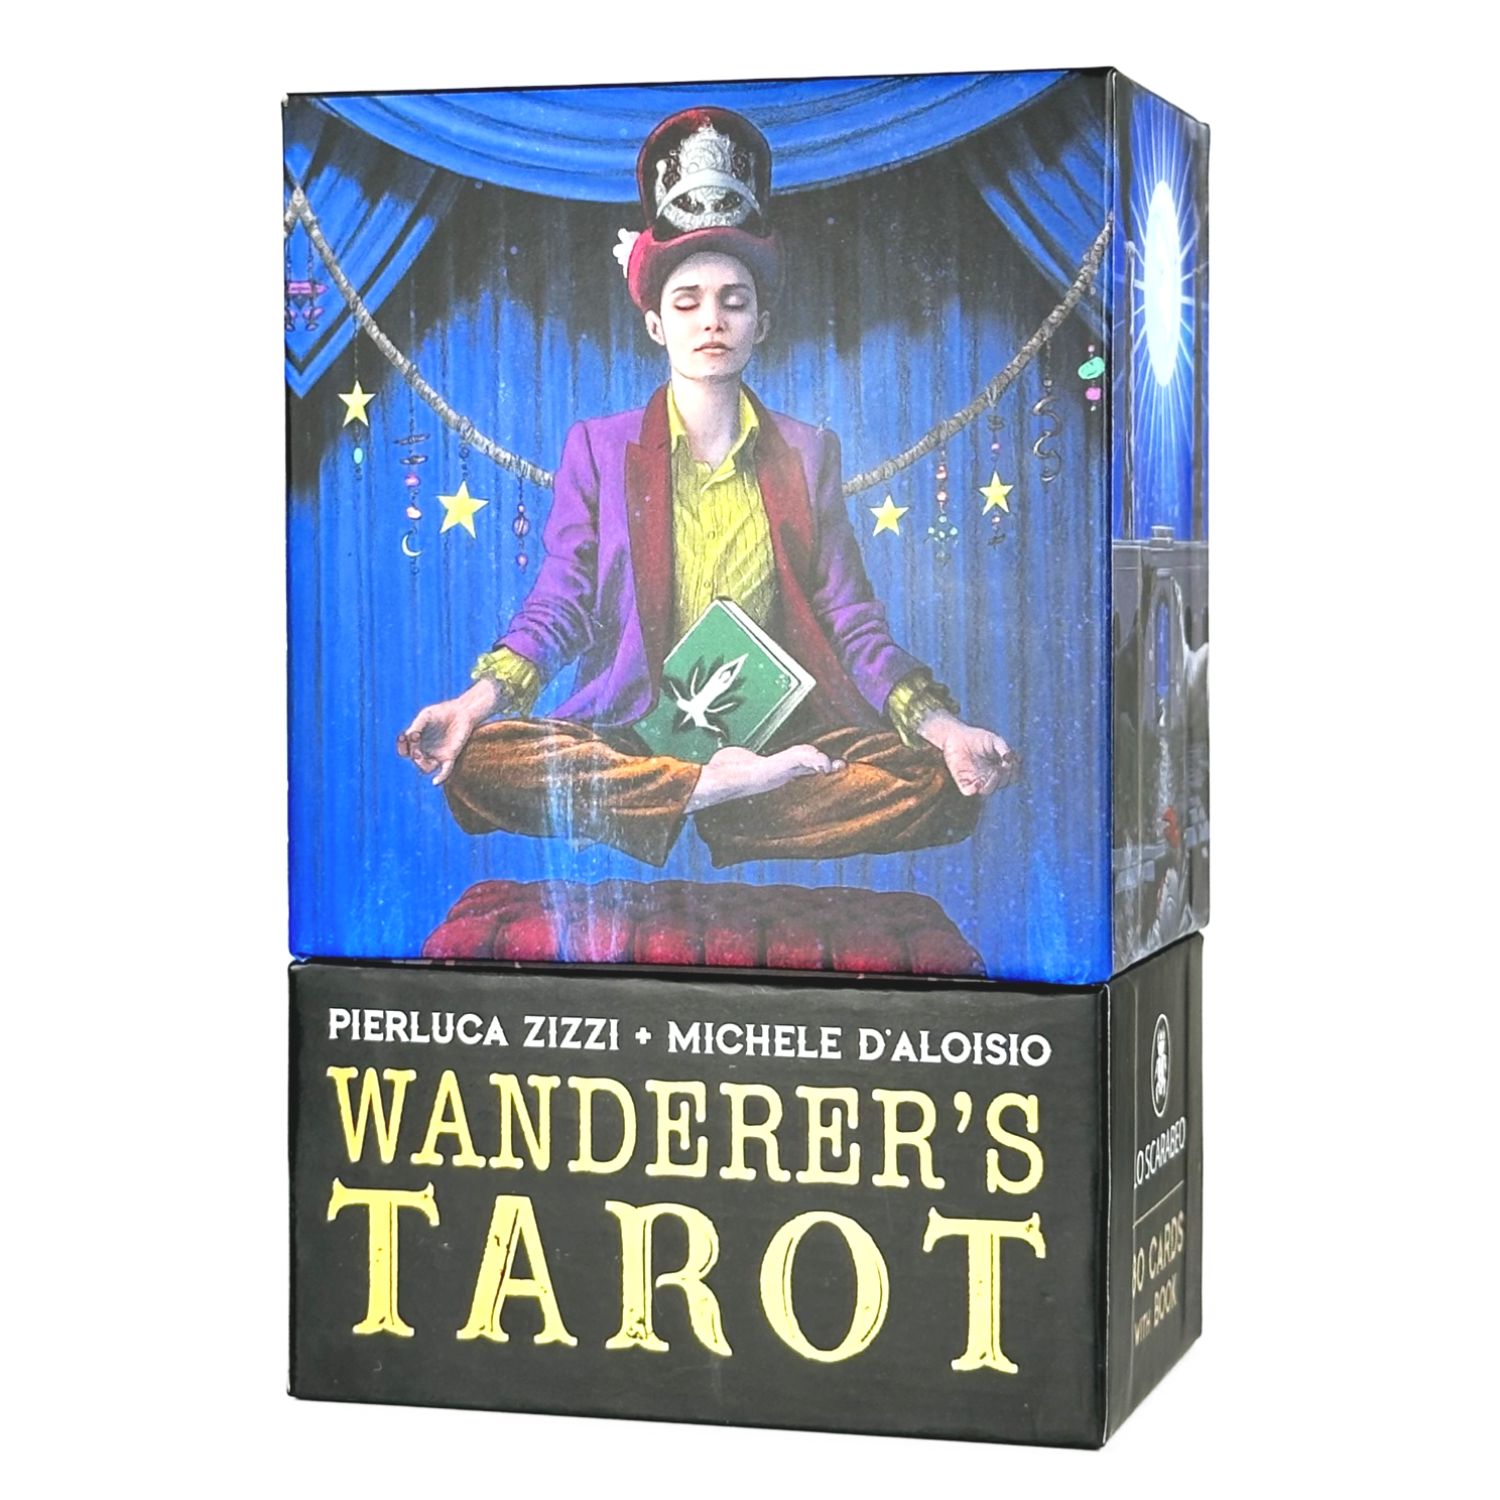 タロットカード タロット占い ワンダラーズ・タロット Wanderer's Tarot 日本語解説書付き 正規品